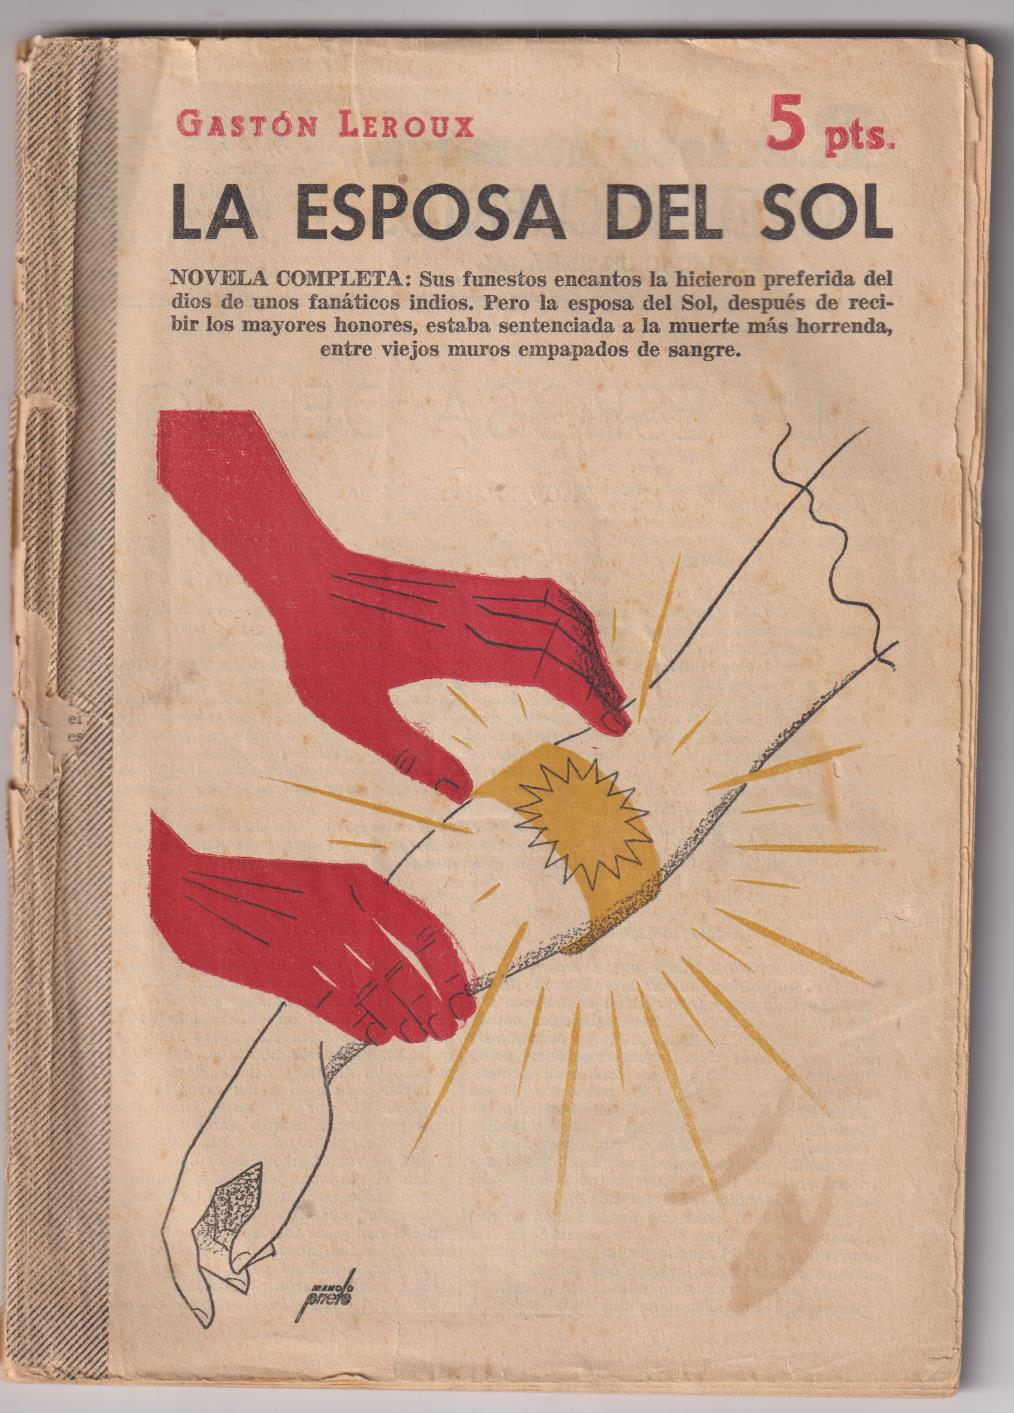 Revista Literaria Novelas y Cuentos nº 1208. la Esposa del Sol por Gastón Leroux. Año 1956